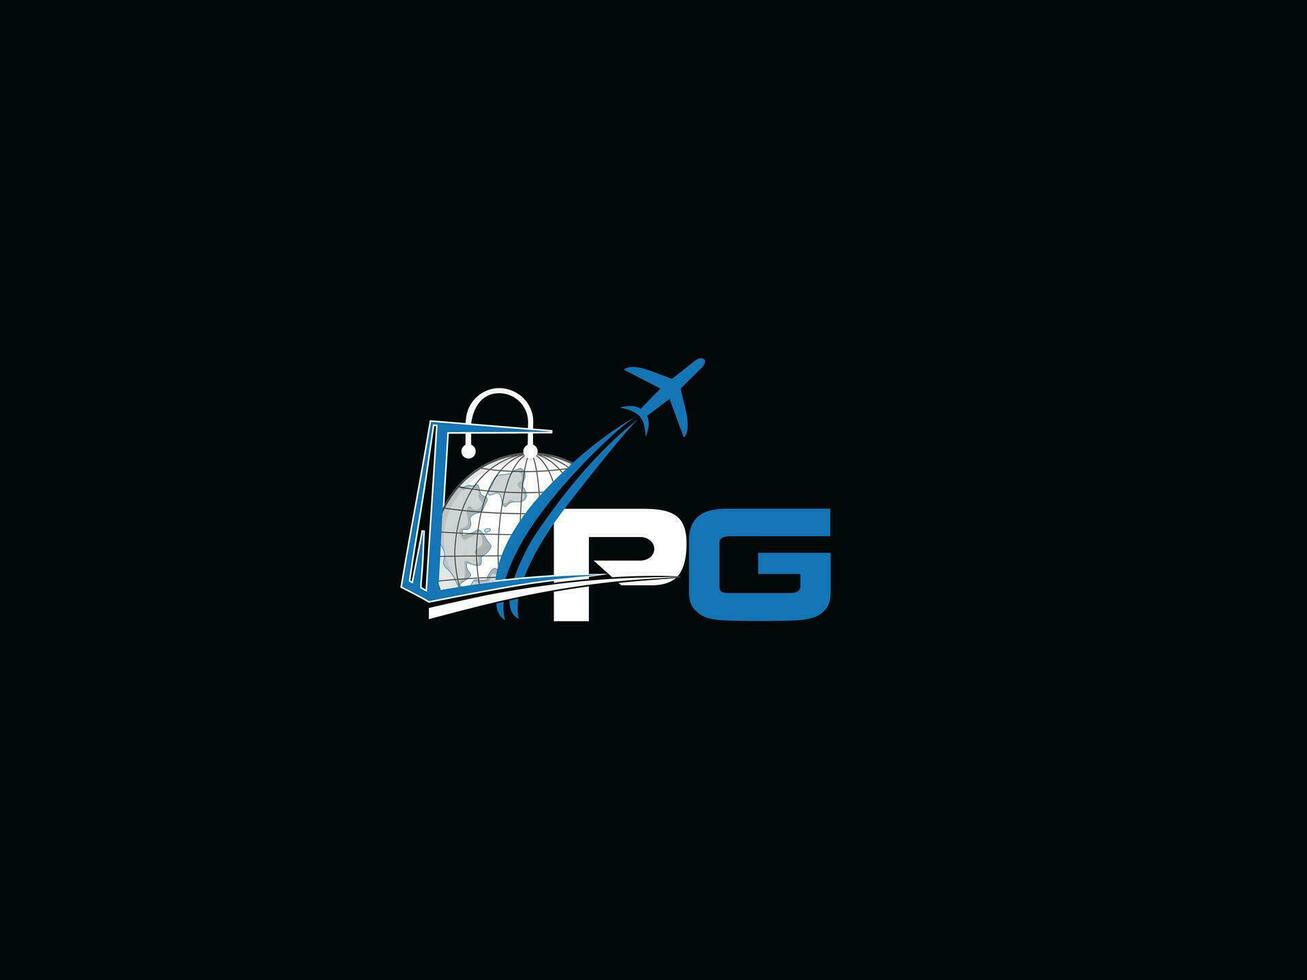 Monogramm Reise pg Logo Design, global p Reisen Brief Logo Symbolmonogramm Reise p Logo Design, global pg Reisen Brief Logo Symbol vektor